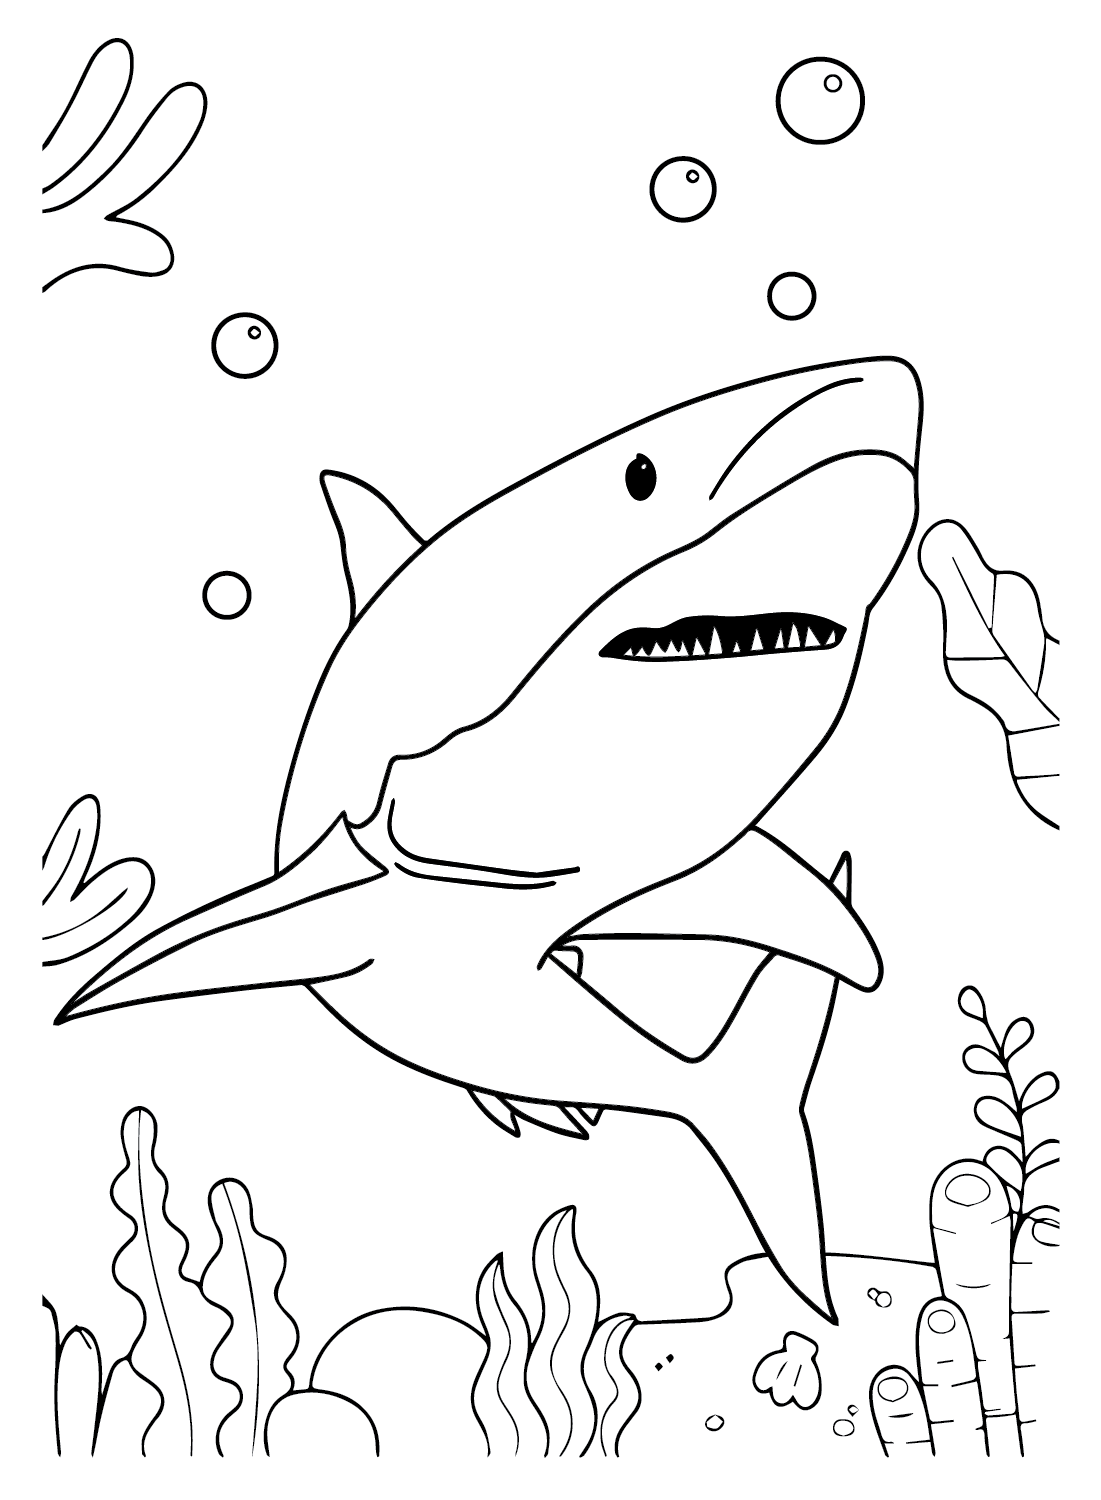 Gran tiburón blanco de dibujos animados de Gran tiburón blanco